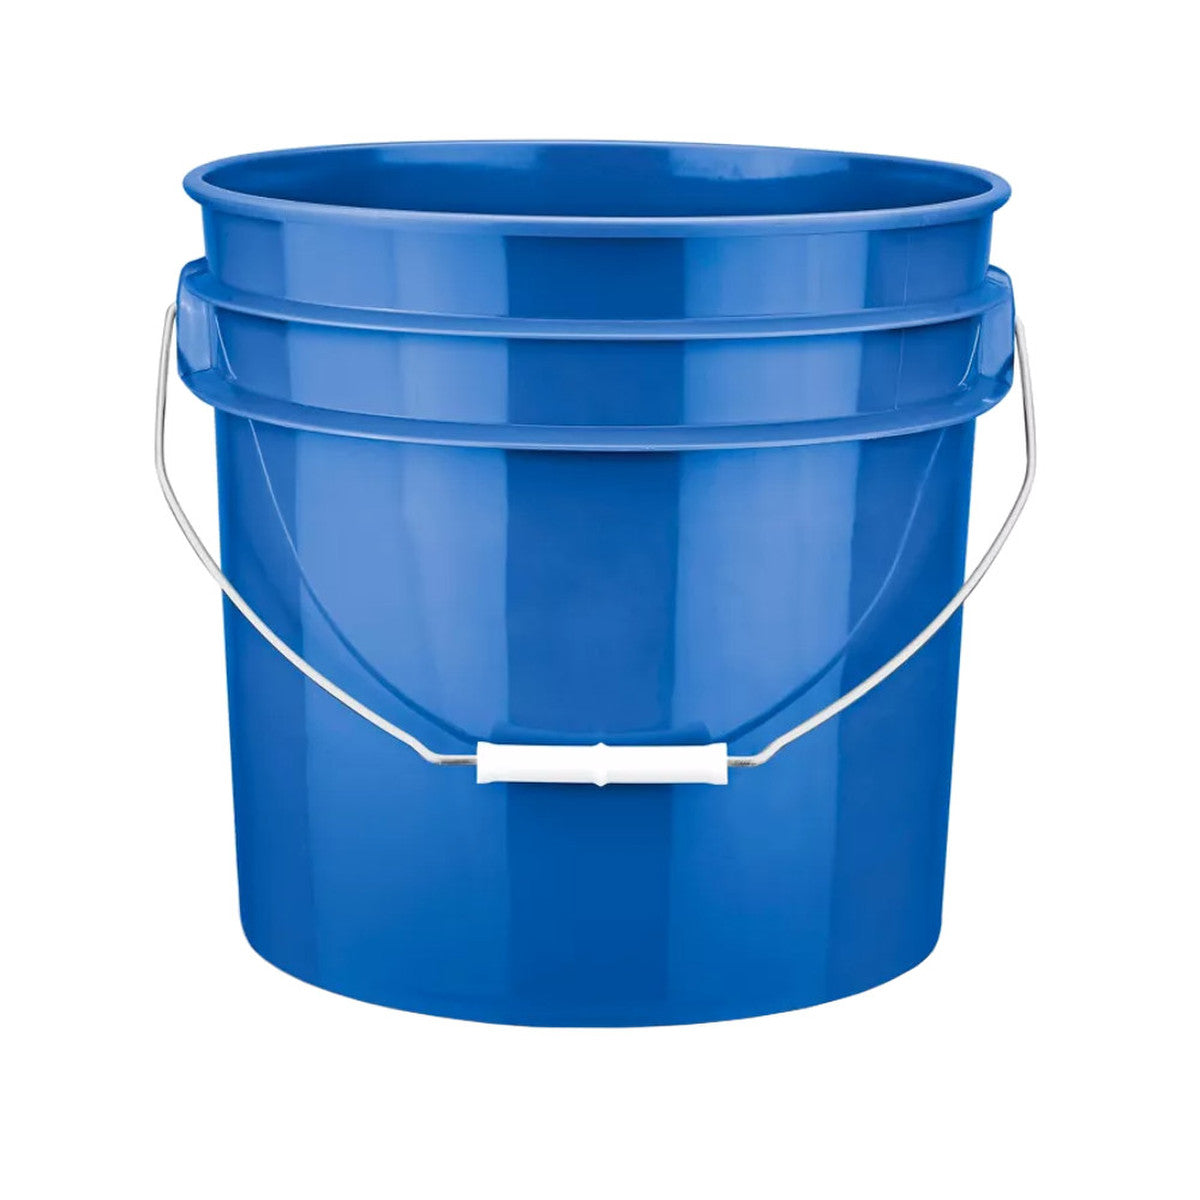 3 1/2 Gallon Round Bucket